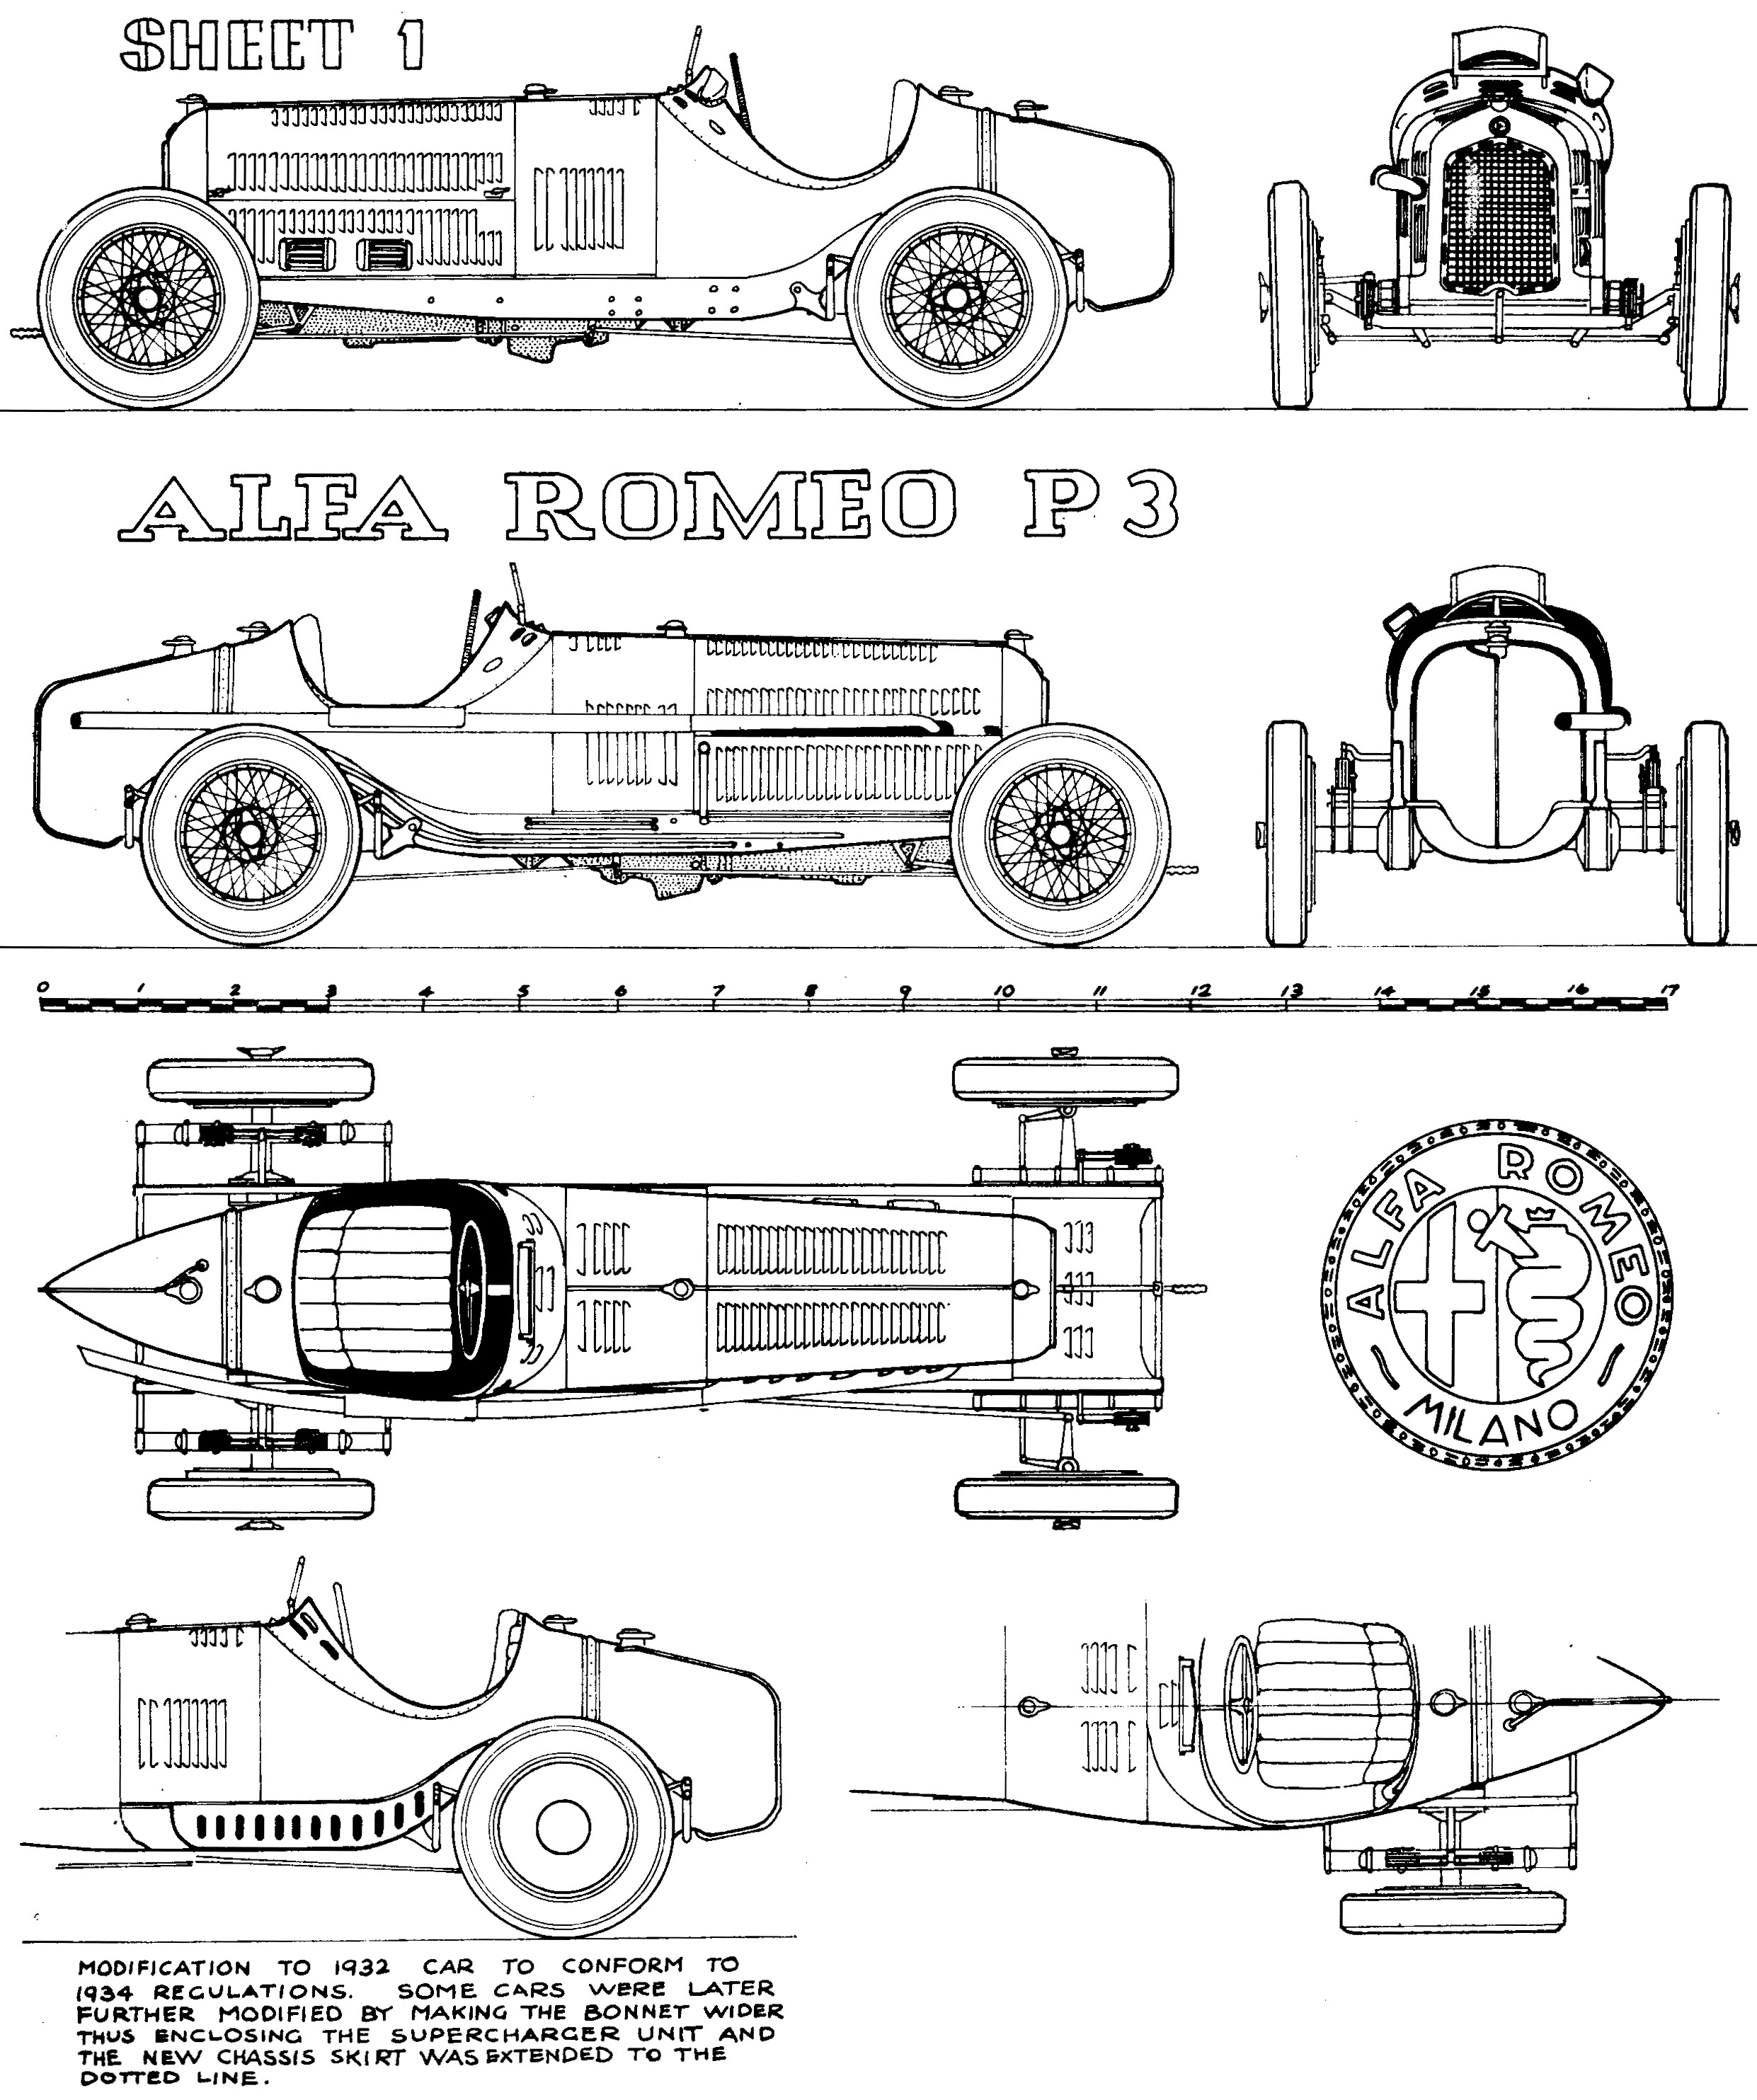 Diagram Of Car Frame Alfa Romeo P3 1932 33 Smcars Net Car Blueprints forum Of Diagram Of Car Frame